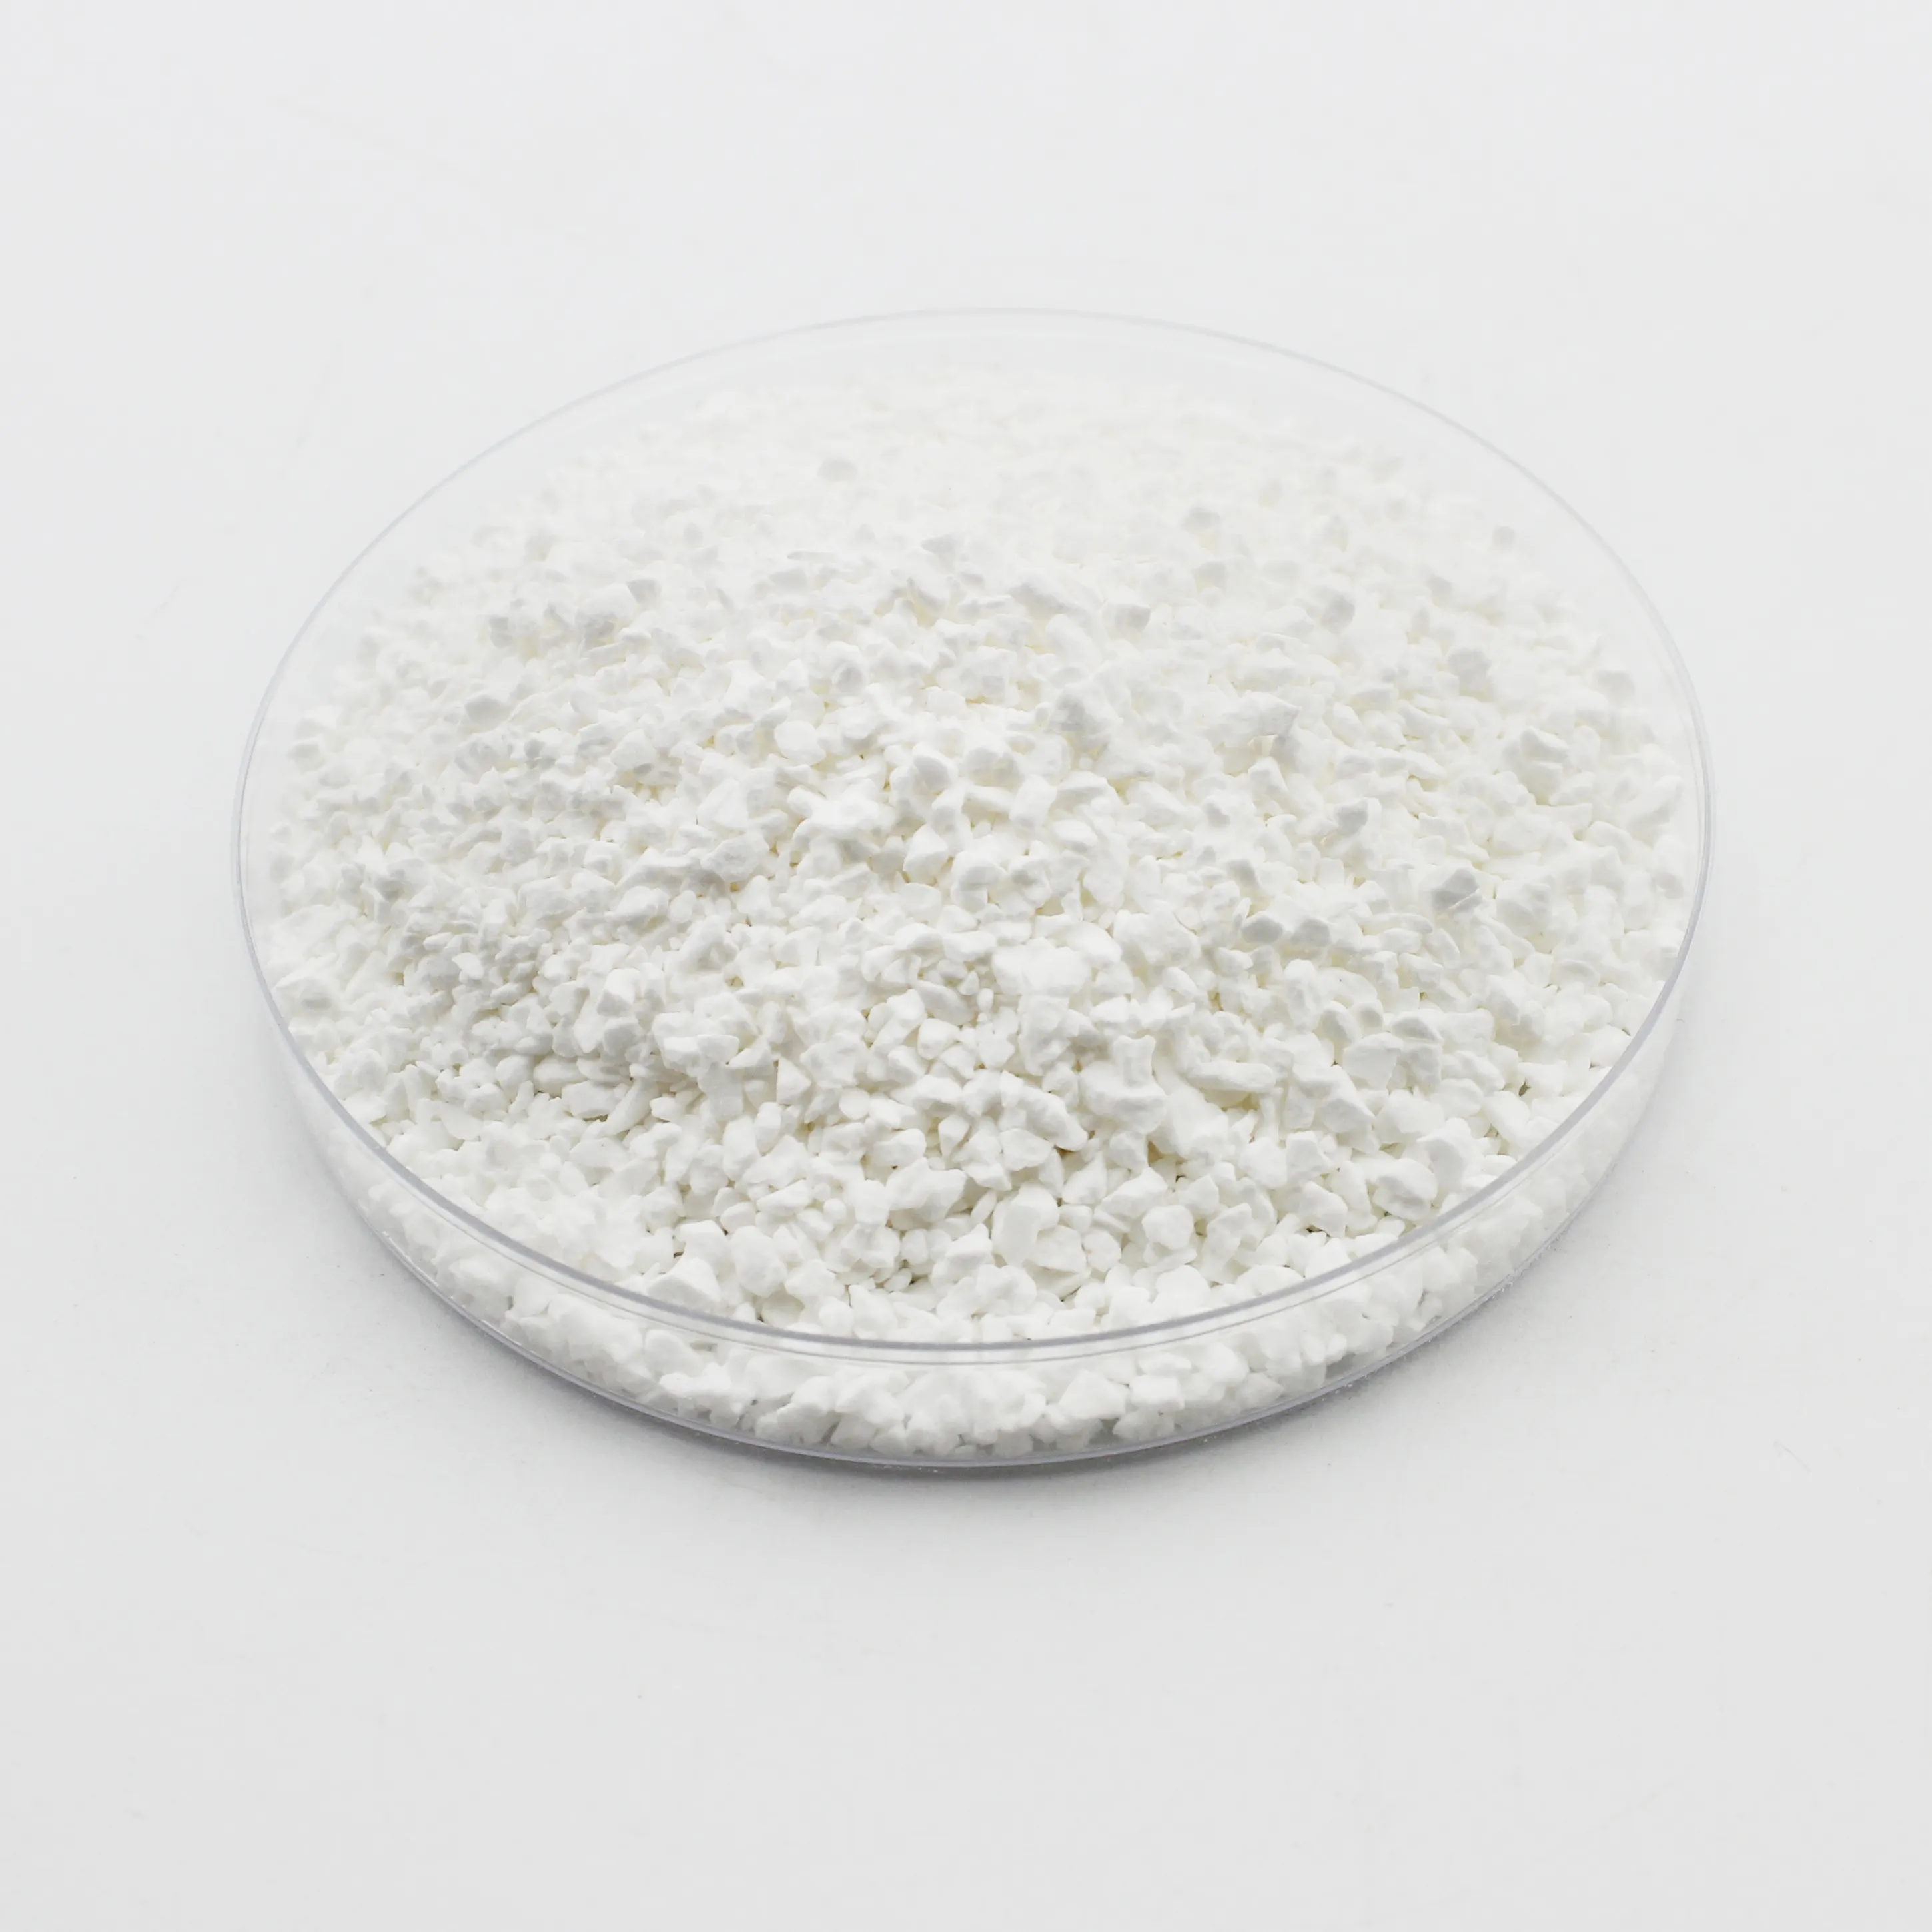 Chlor granulat Schwimmbad 98,5% Reinheit Chemischer Rohstoff Cyanur säure Granulat